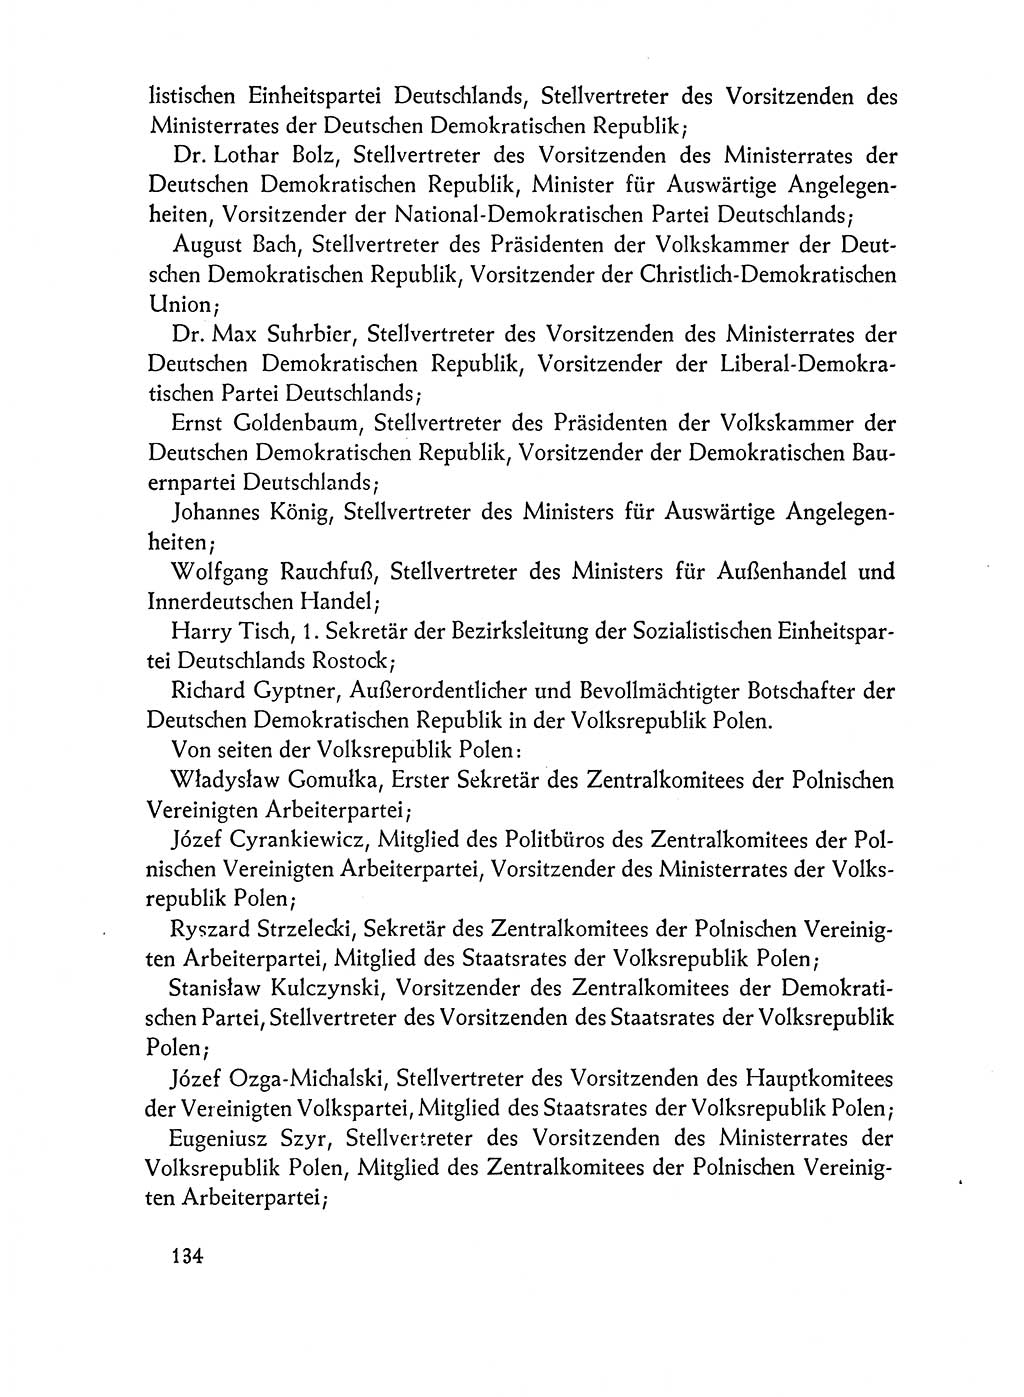 Dokumente der Sozialistischen Einheitspartei Deutschlands (SED) [Deutsche Demokratische Republik (DDR)] 1962-1963, Seite 134 (Dok. SED DDR 1962-1963, S. 134)